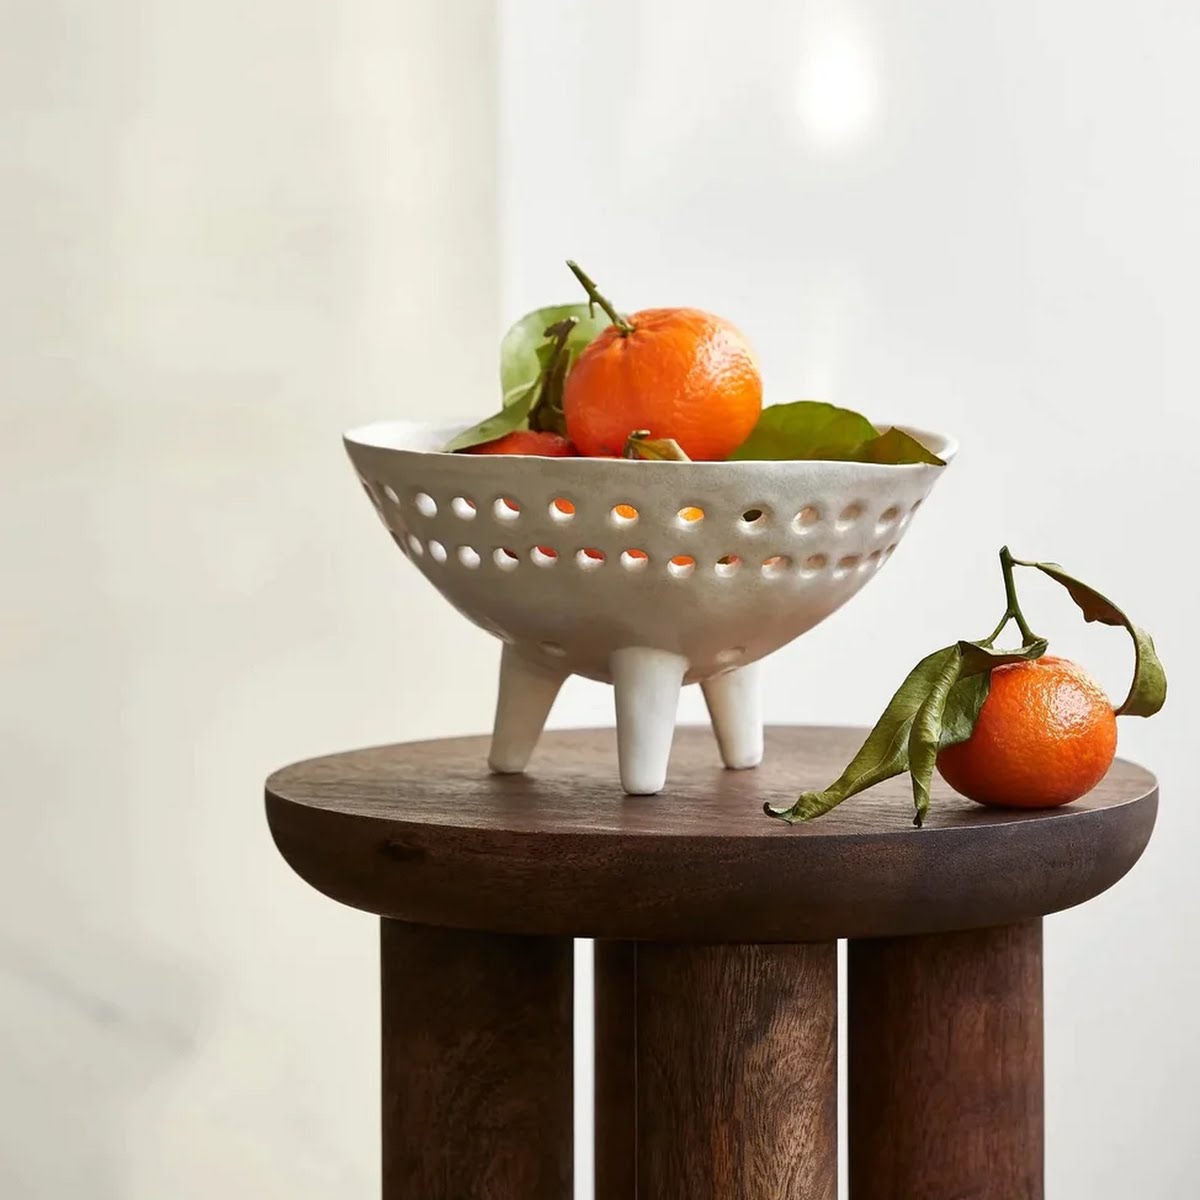 Stone + Beige, Dot Handmade Fruit Bowl, €49.99